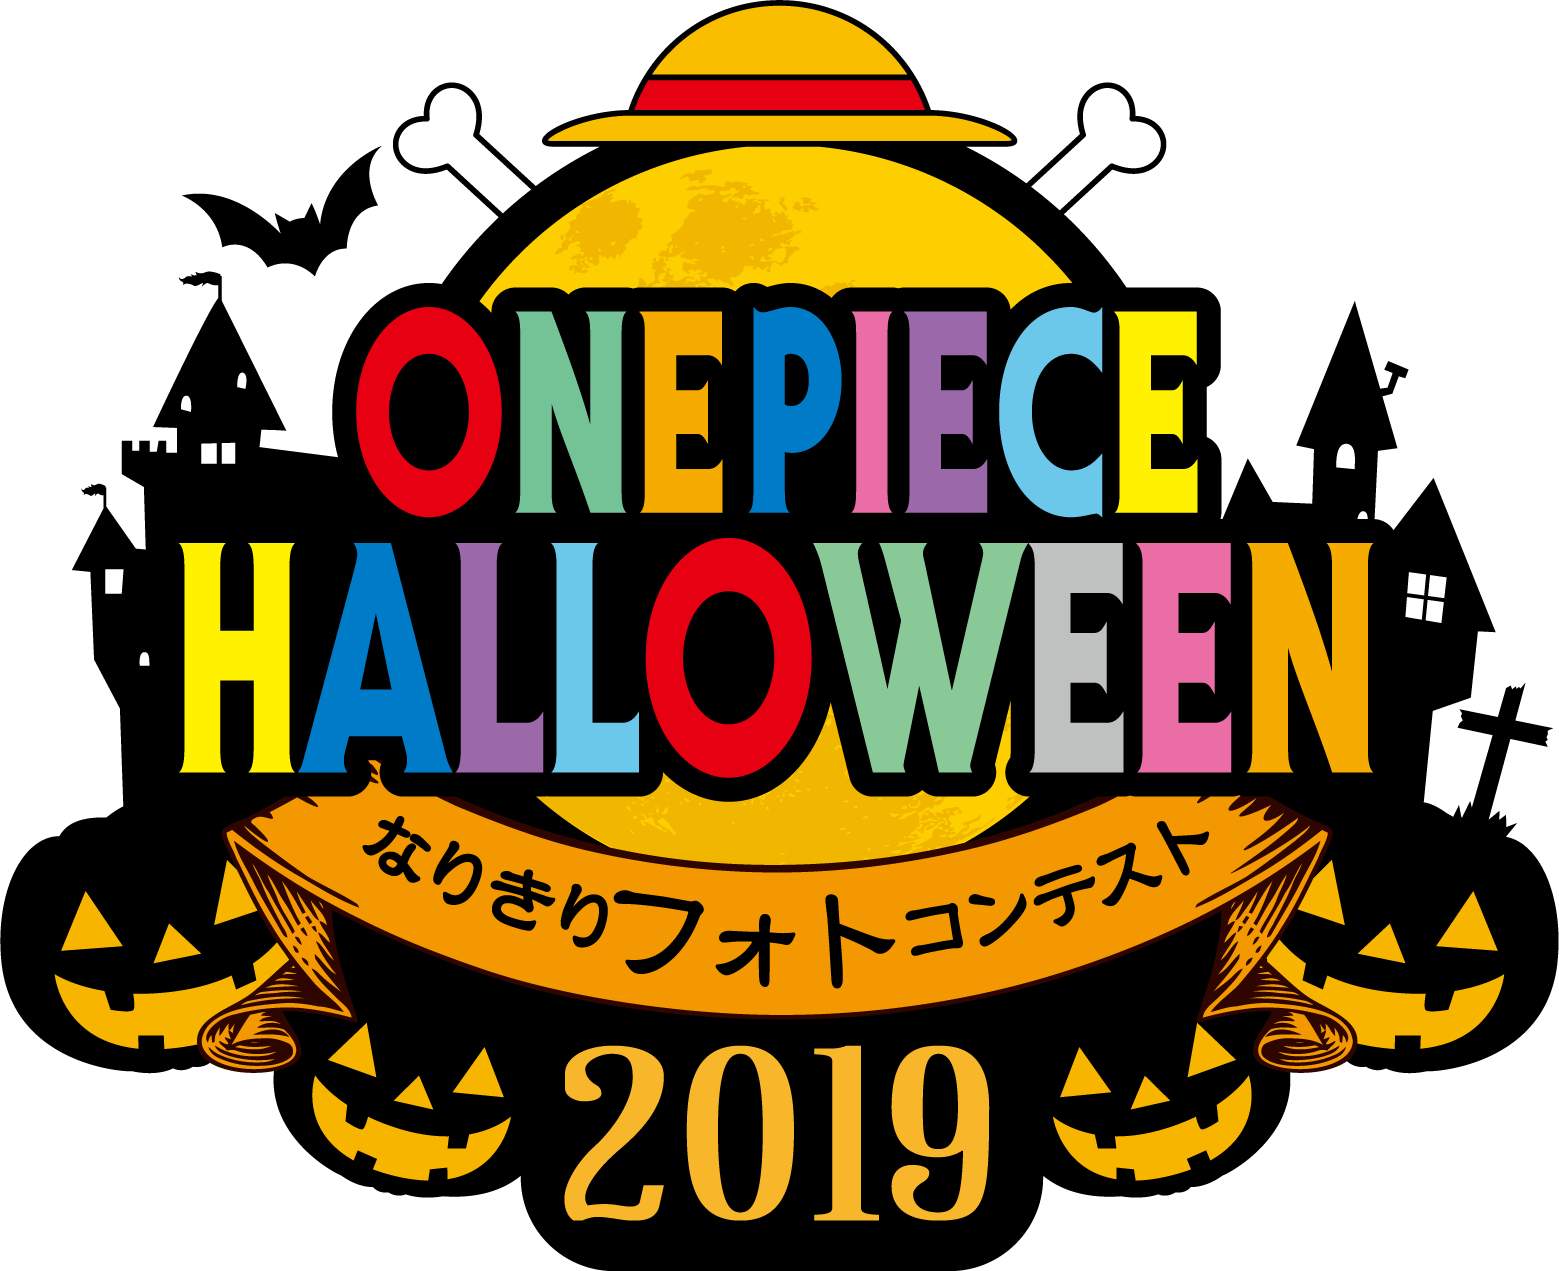 One Piece Halloween 19 なりきりフォトコンテスト 特別審査員はトラファルガー ロー役の神谷浩史さんに決定 東京ワンピース タワーのプレスリリース